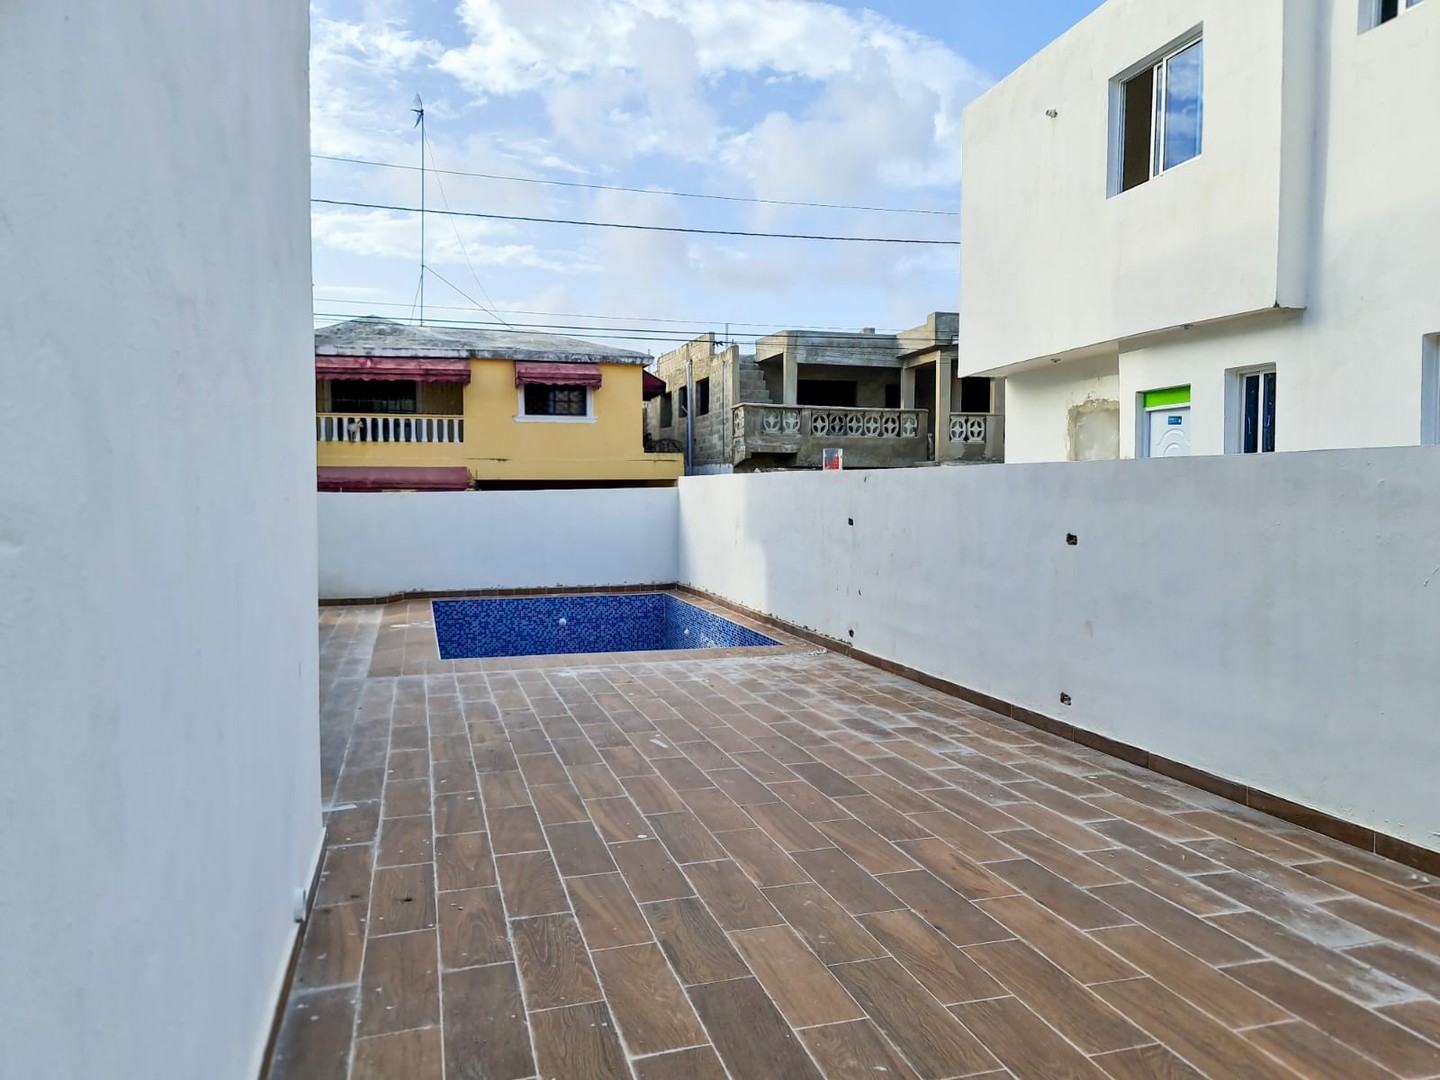 casas - Casas de 2 niveles en proyecto cerrado con piscina y Gymnasio, Aut. San Isidro 3